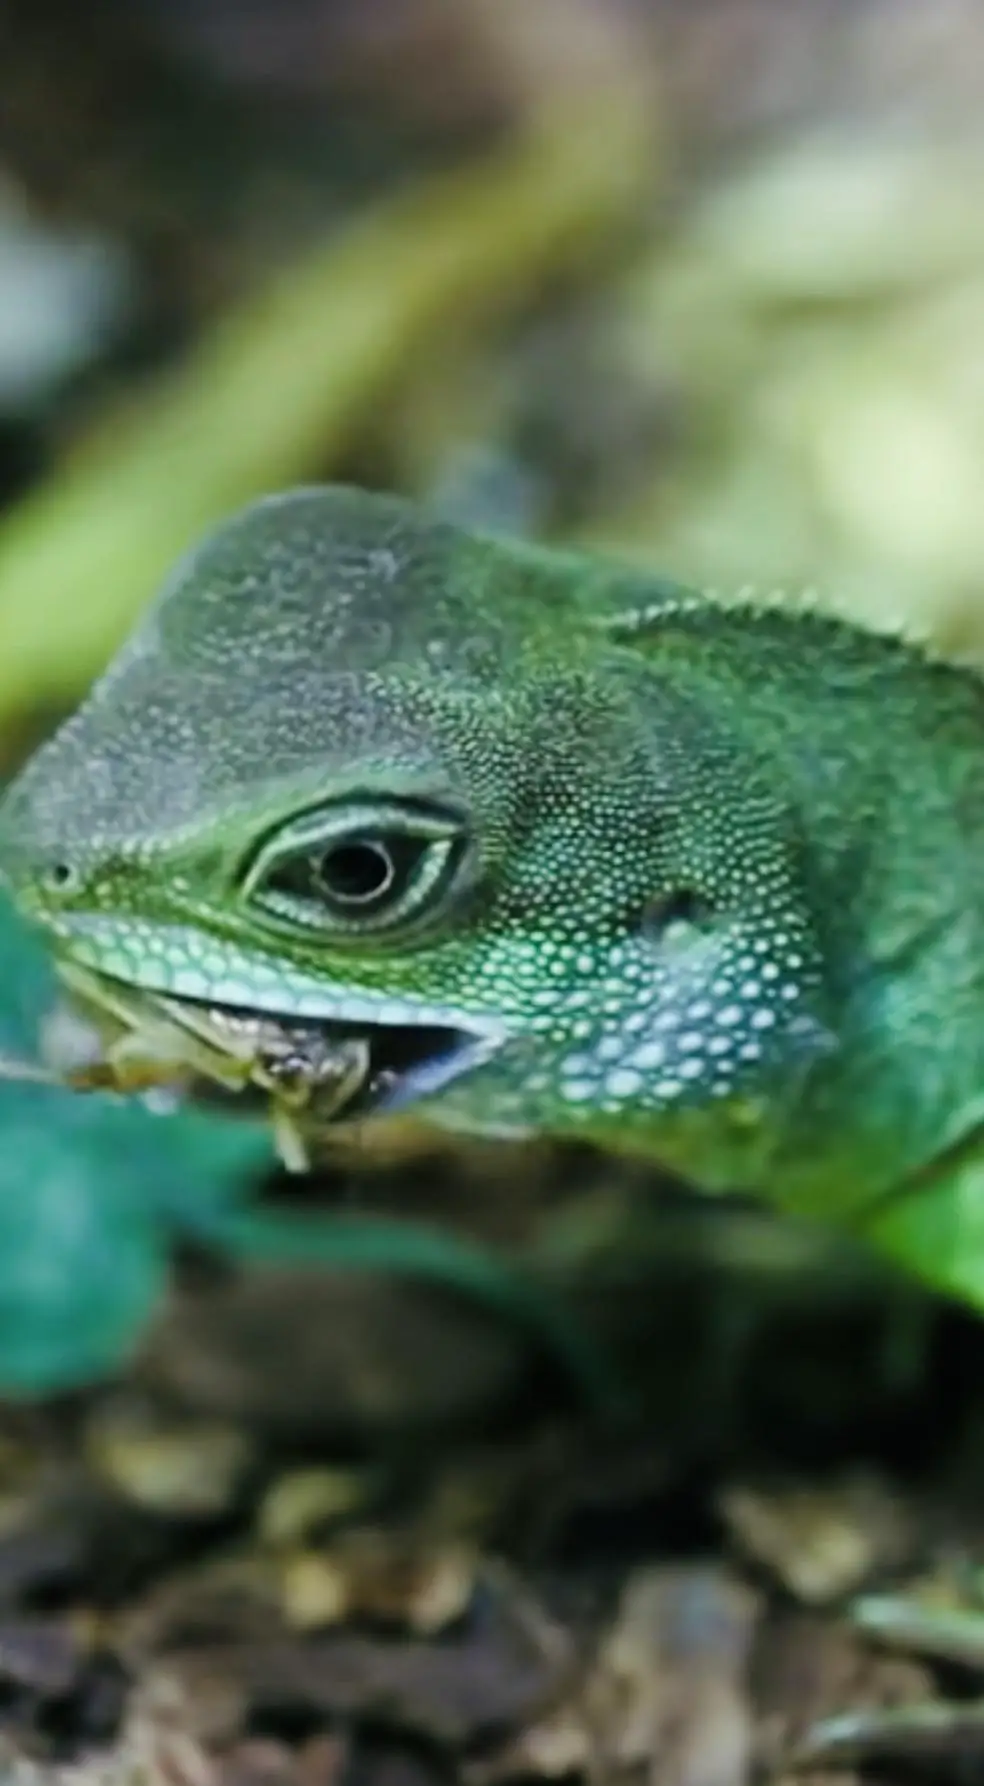 iguana bite into bug